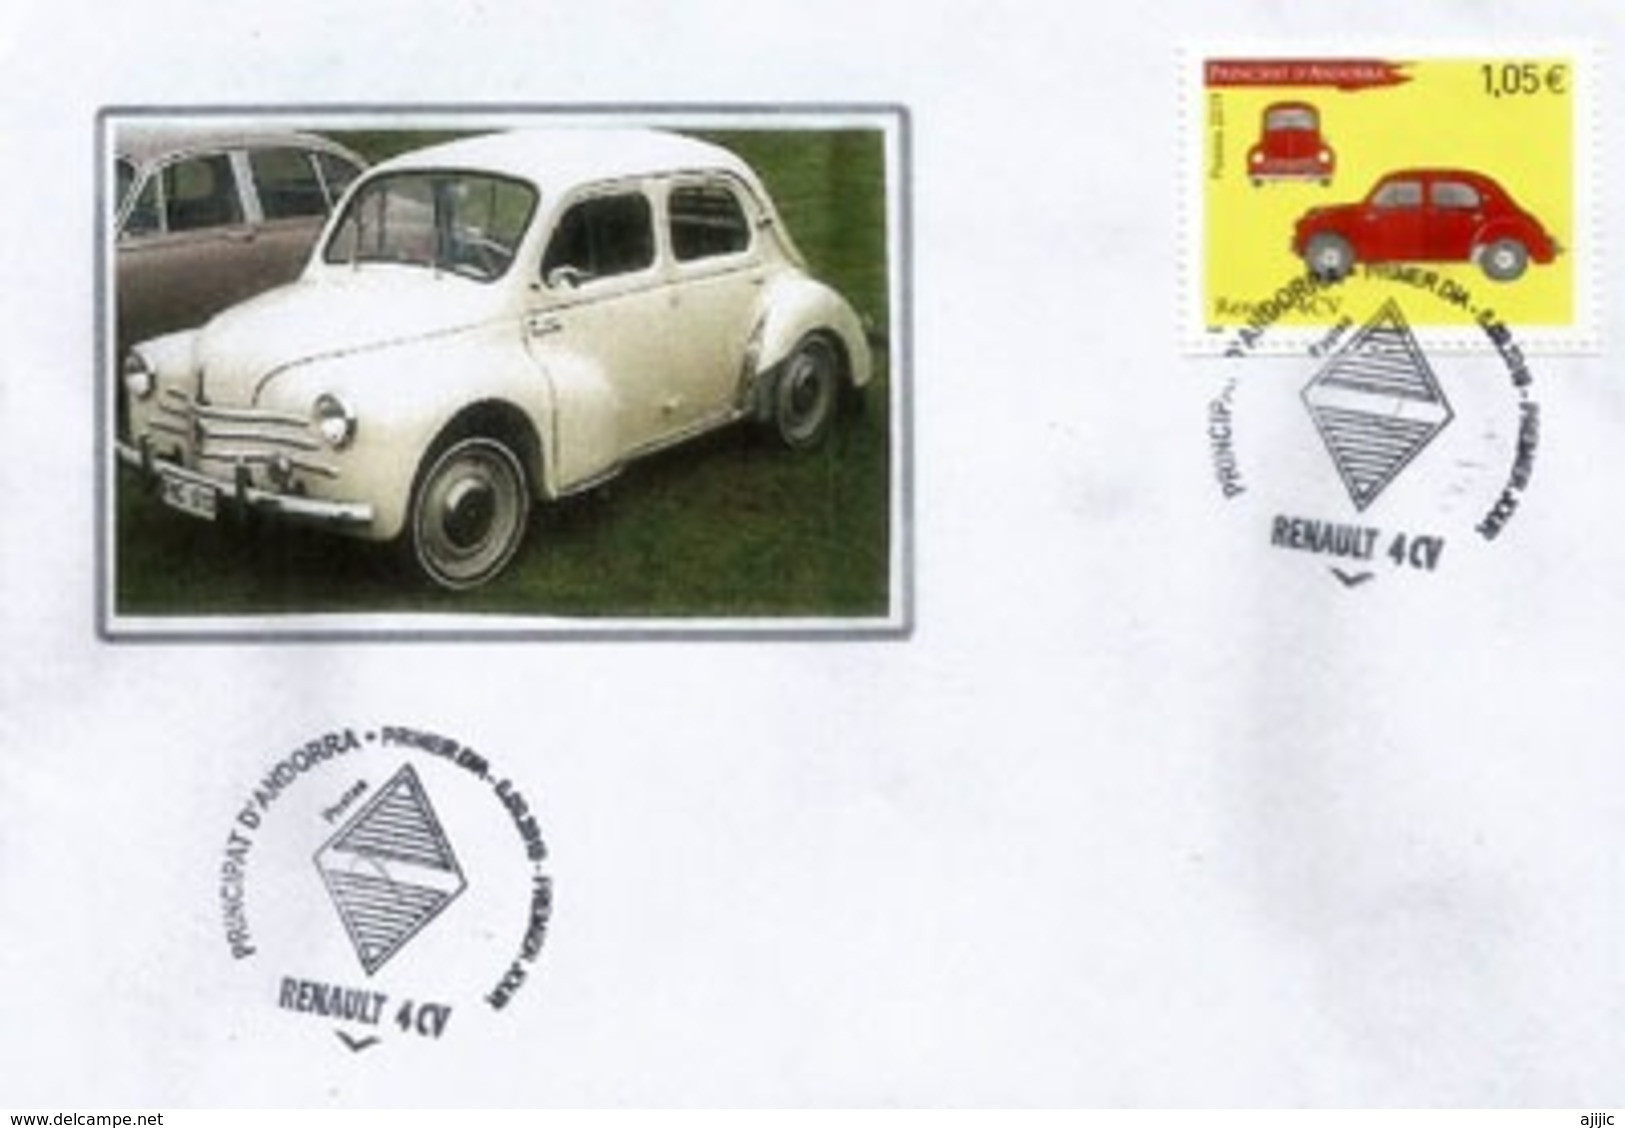 ANDORRA. Renault 4CV, Année 1947. émission Année 2019.  Oblitération Illustrée Losange Renault.  FDC - Covers & Documents